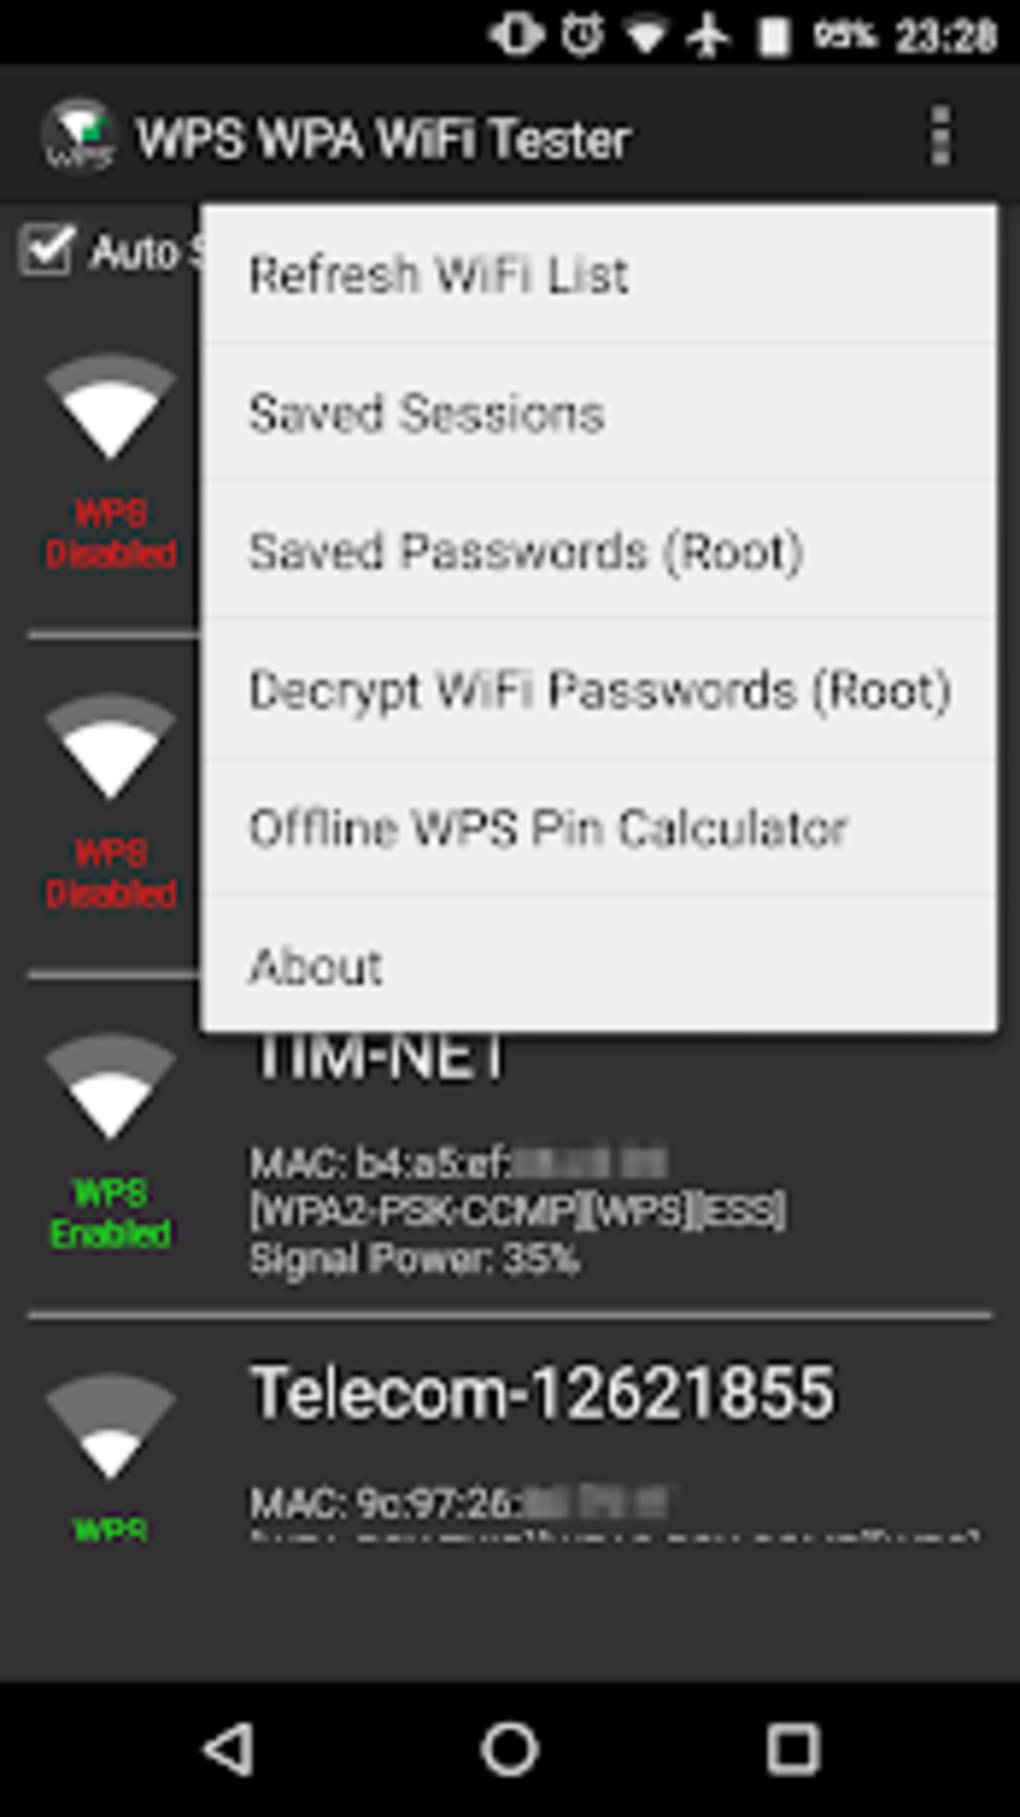 Wifi wpa tester. WIFI:T:WPA;S:Lanta-6d19;p:f8f082b16d19;;. WIFI WPS WPA. WIFI WPA WPA Tester. WIFI:T:WPA;S:Marg'UBA;P:14103101;;.